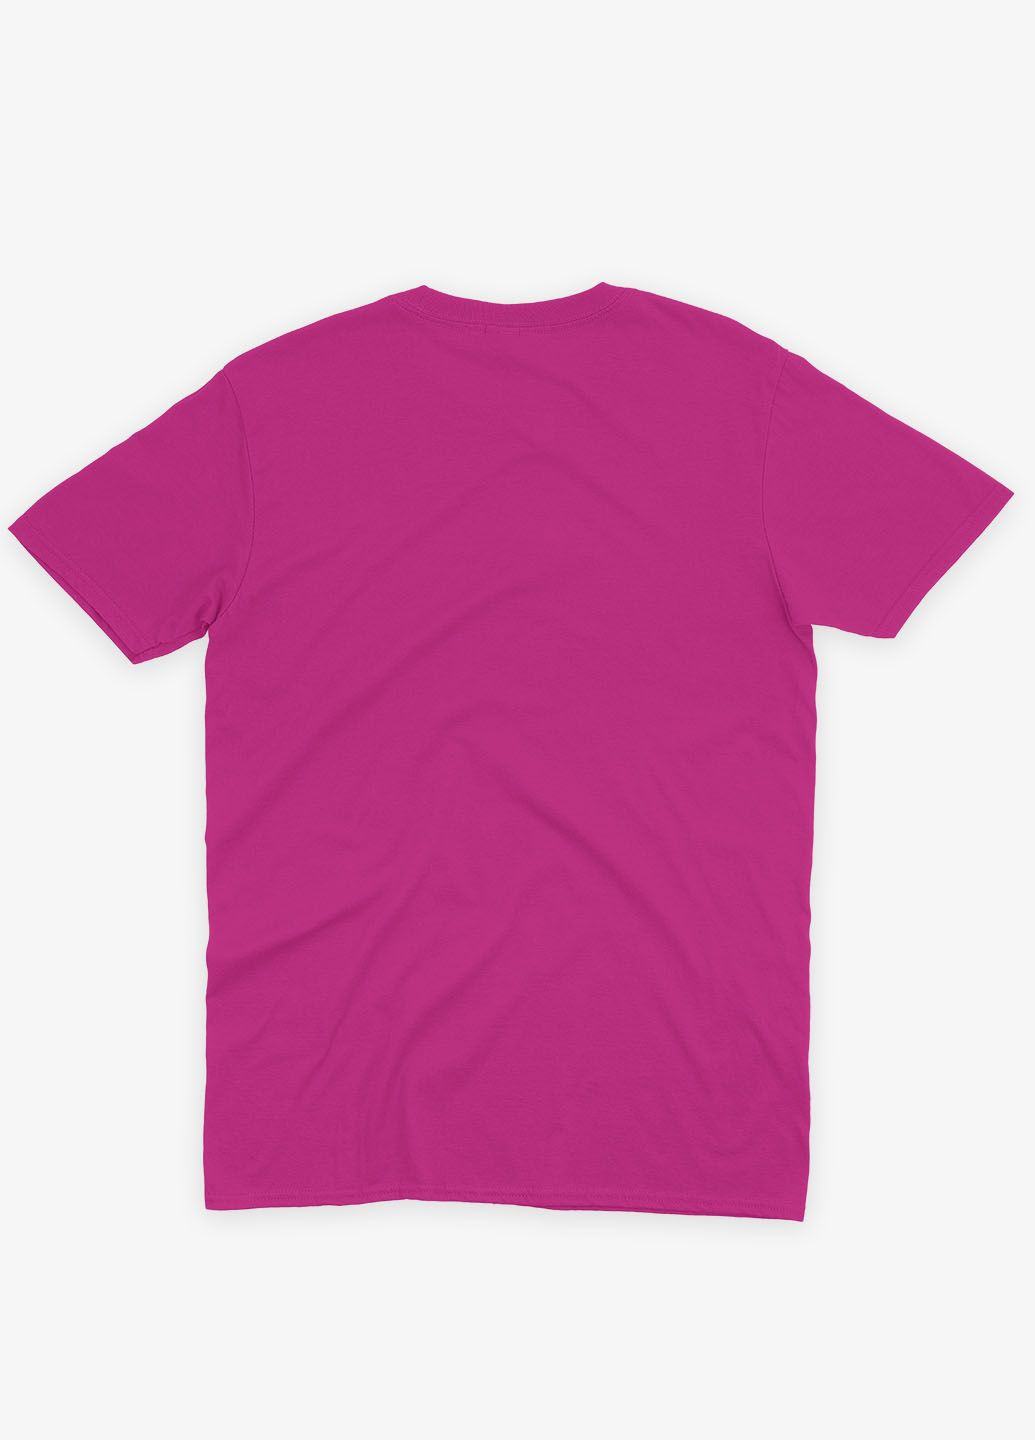 Розовая демисезонная футболка для девочки с принтом супергероя - бэтмен (ts001-1-fuxj-006-003-033-g) Modno